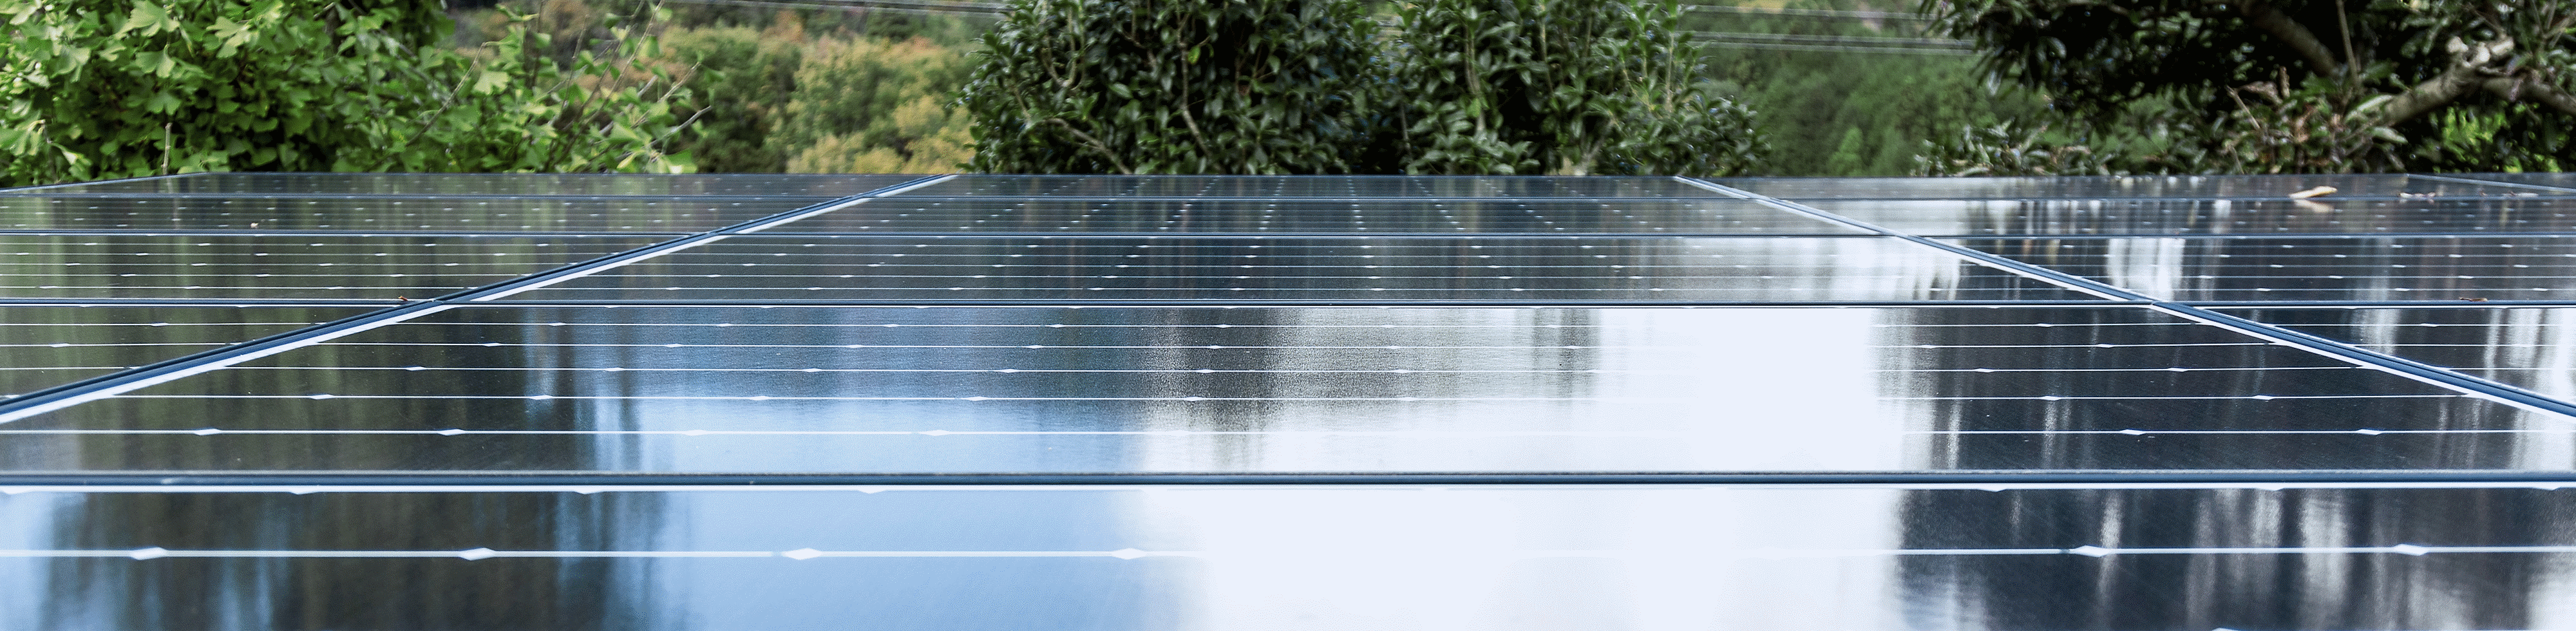 صورة فوتوغرافية تعرض سطح مصنع مغطى بألواح شمسية